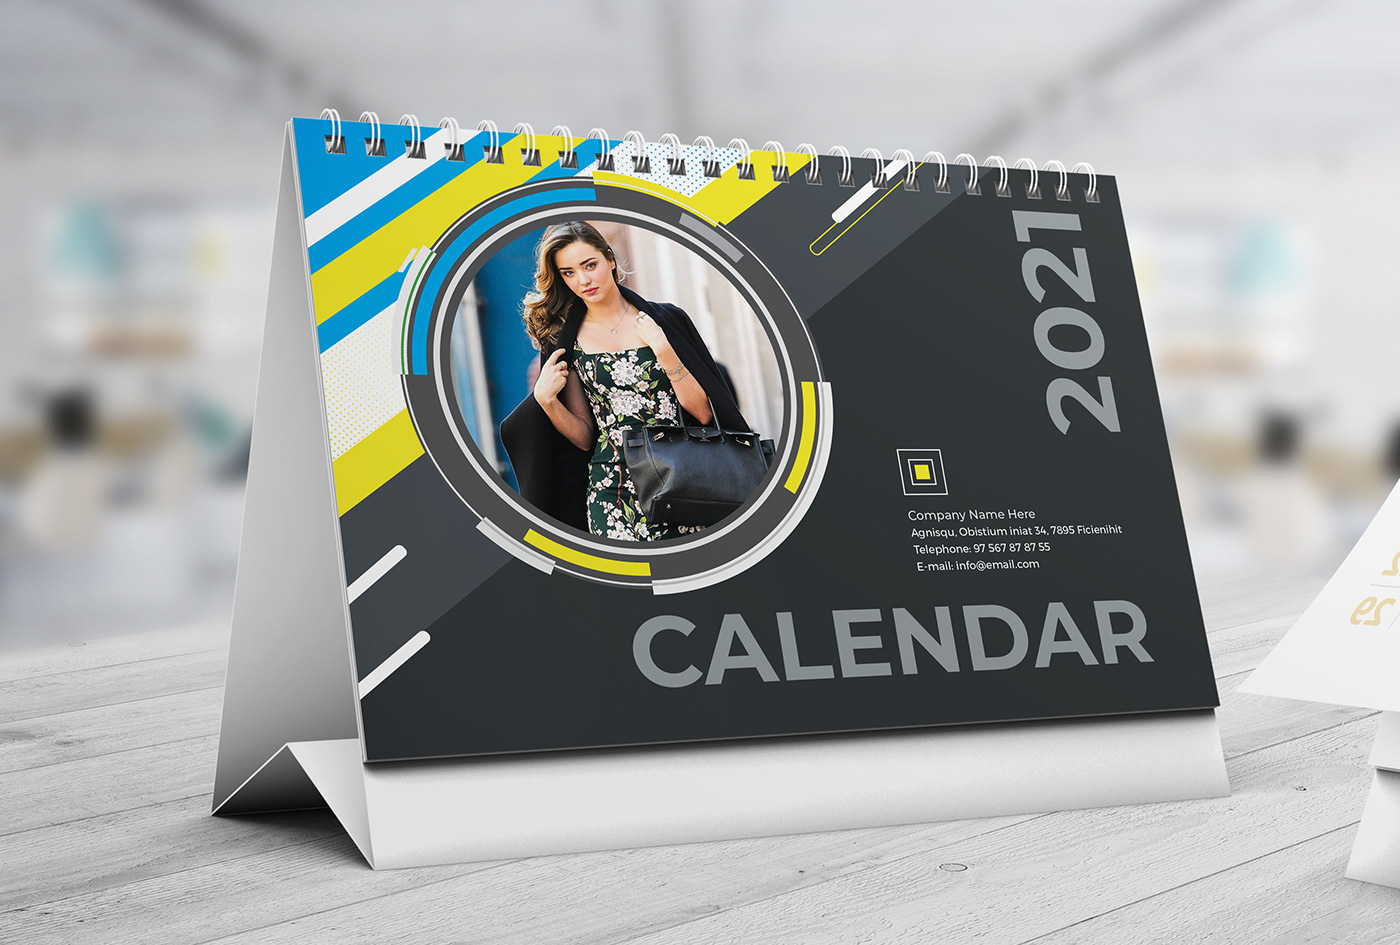 business calendar calendar 2021 corporate creativehabib desk calendar DESK CALENDAR 2021 month year